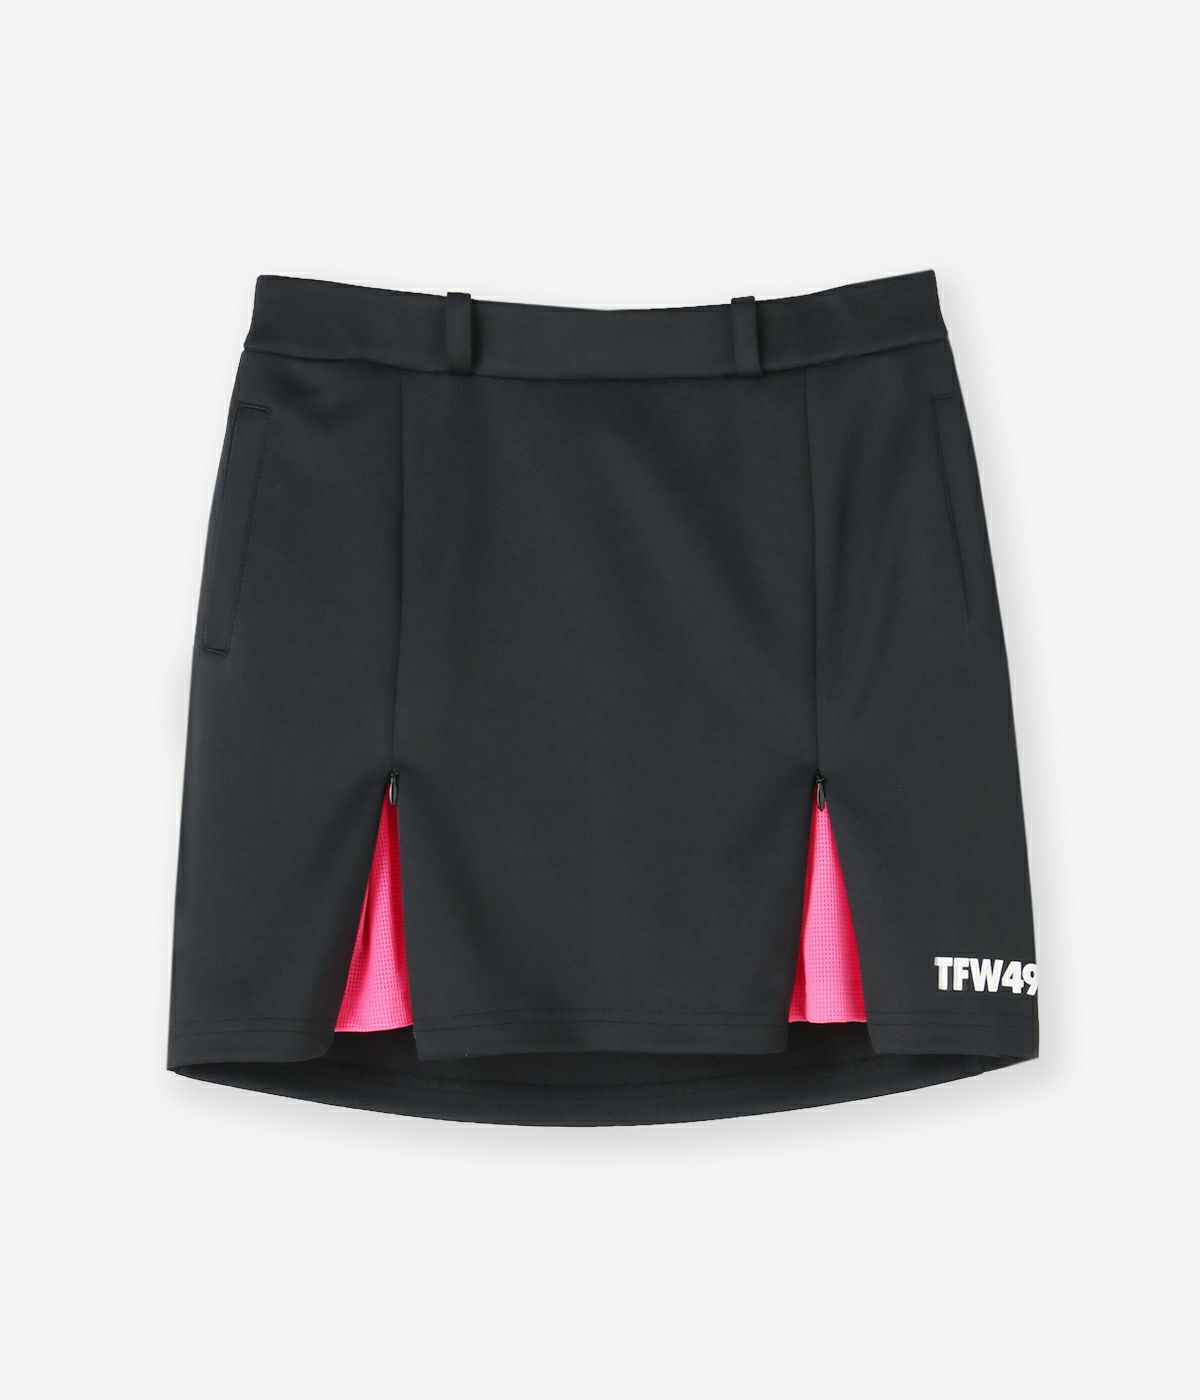 ネットお値下げします！TFW49 golf ladies スカート スカート